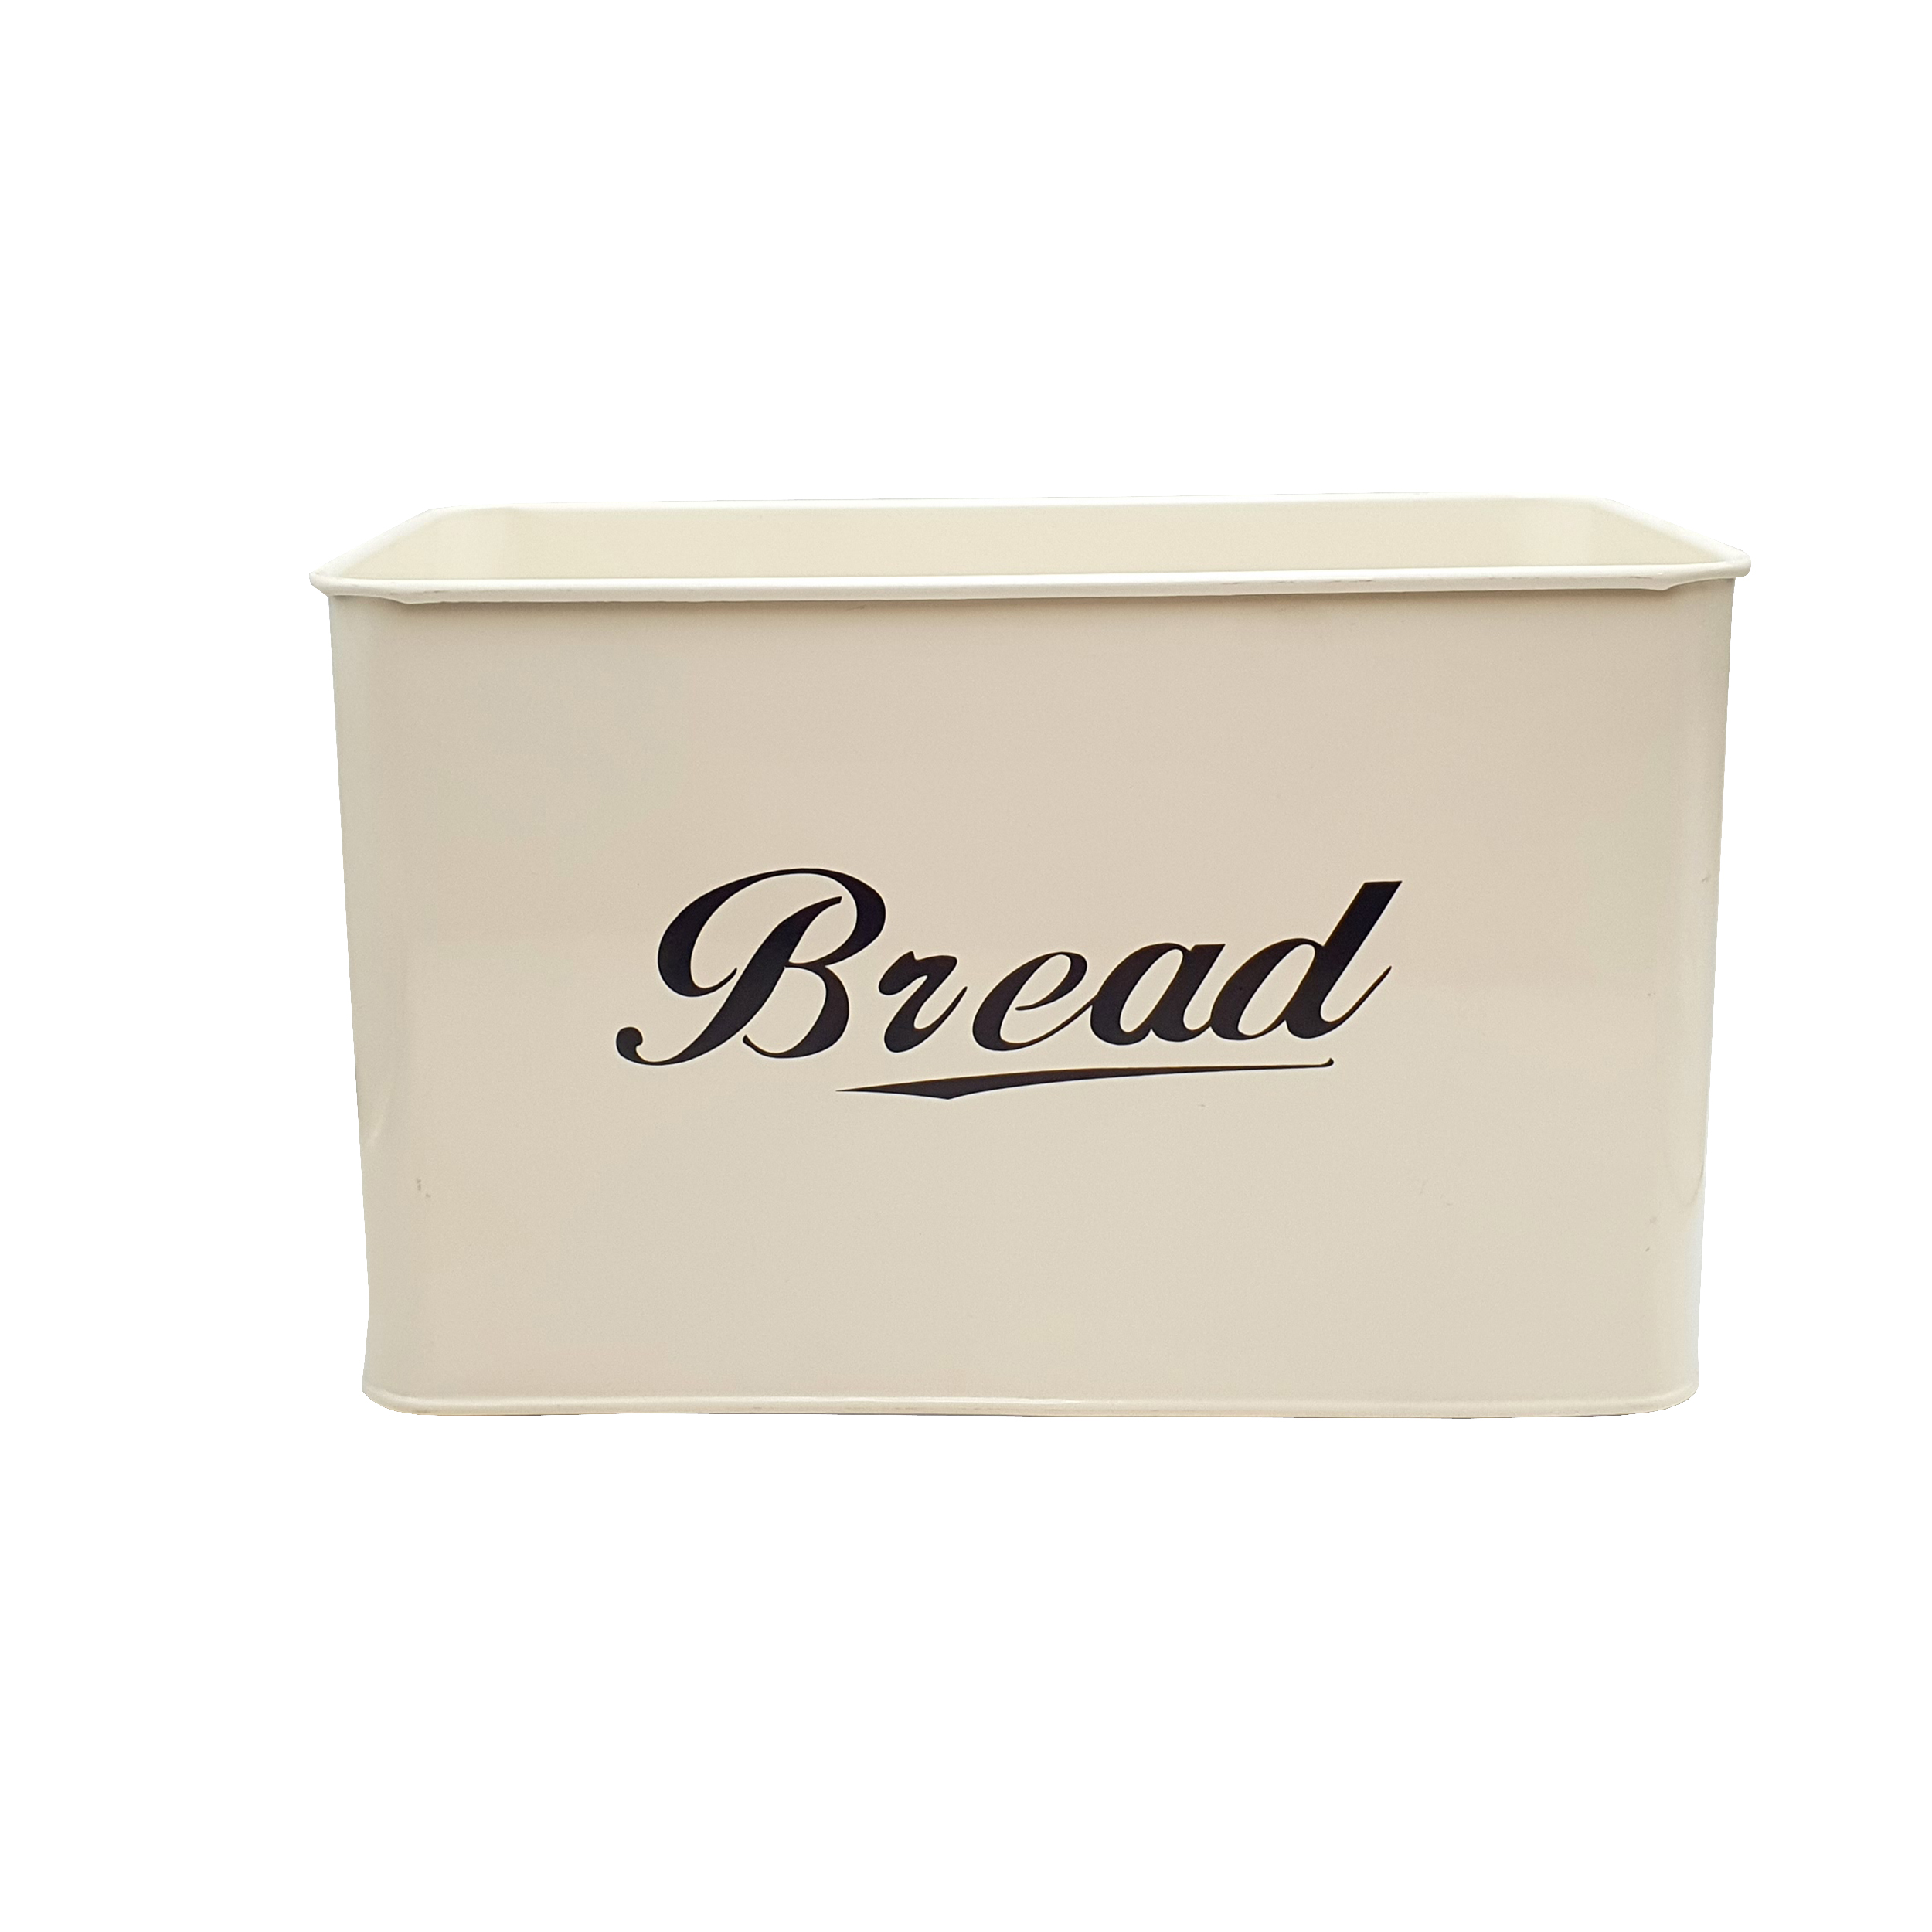 ظرف نان مدل bread کد 5335